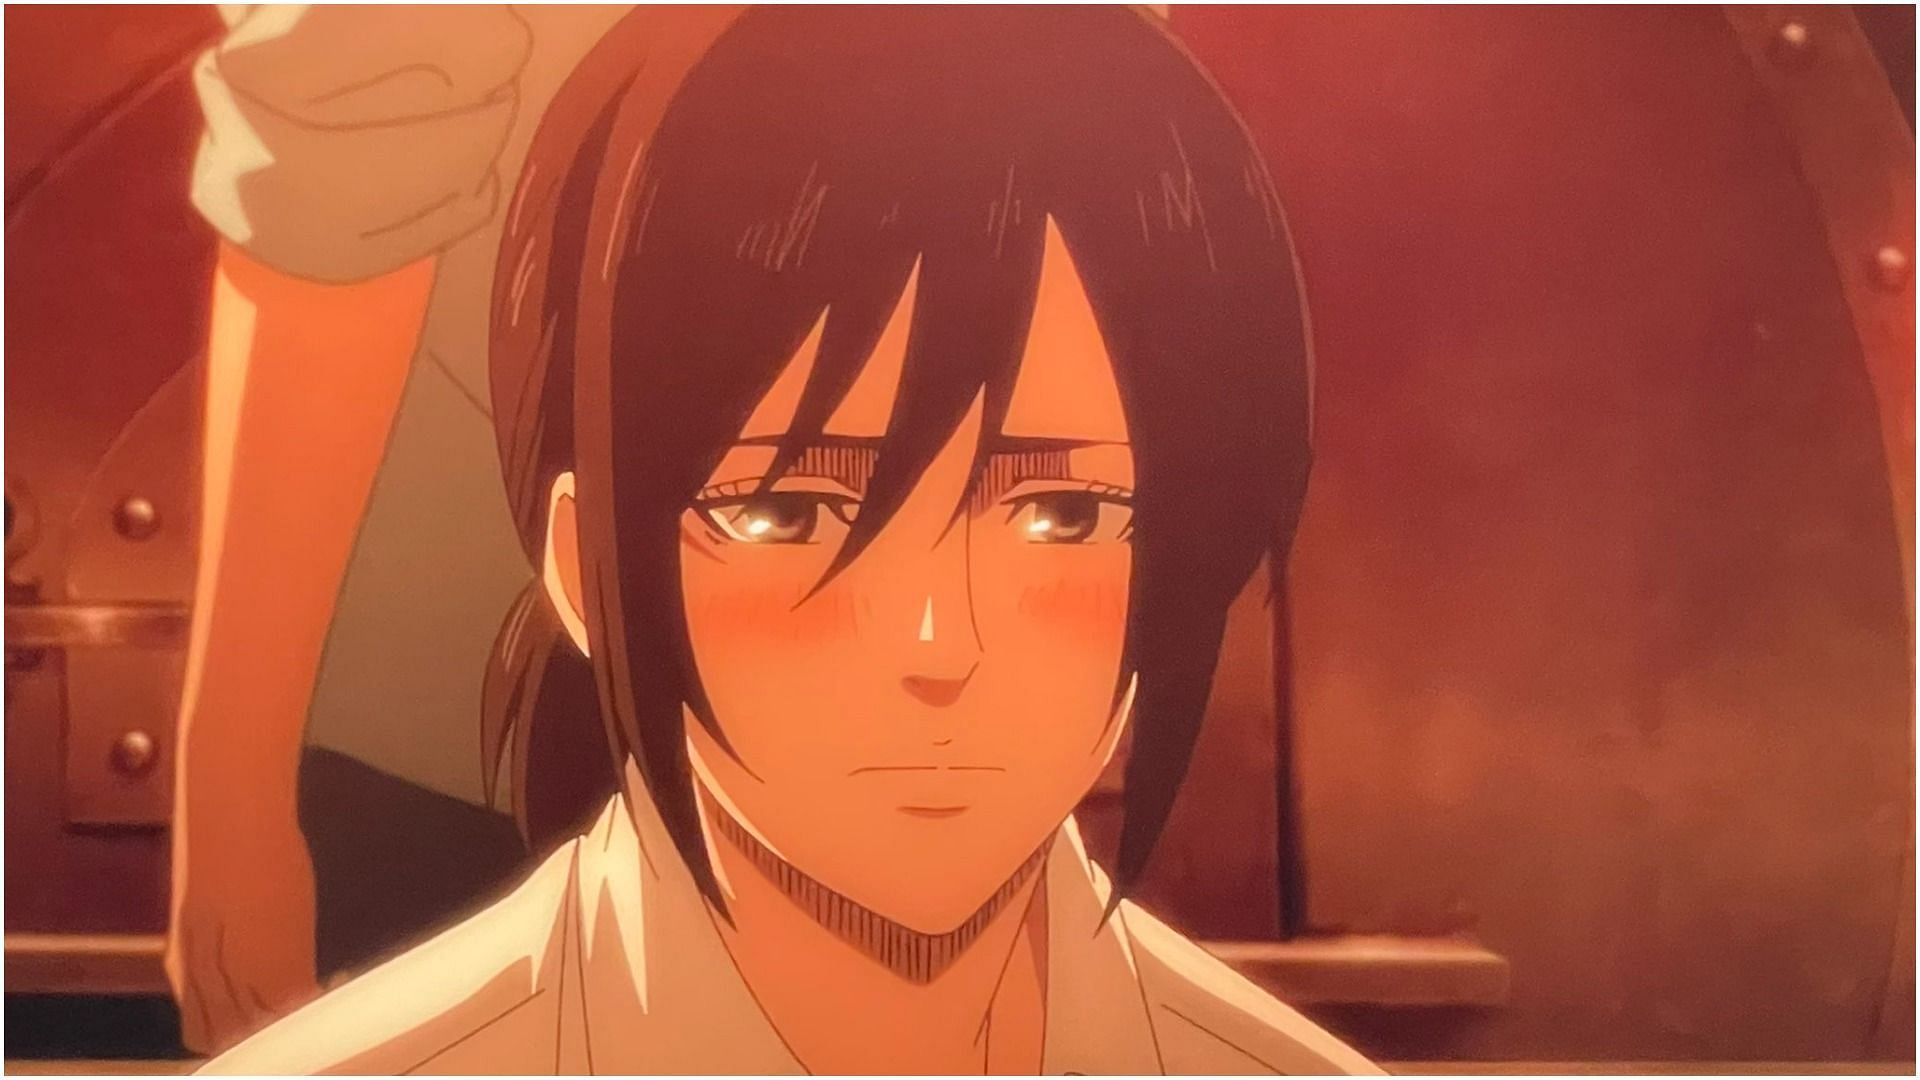 Mikasa Ackerman as seen in the anime Bleach (Image via MAPPA)